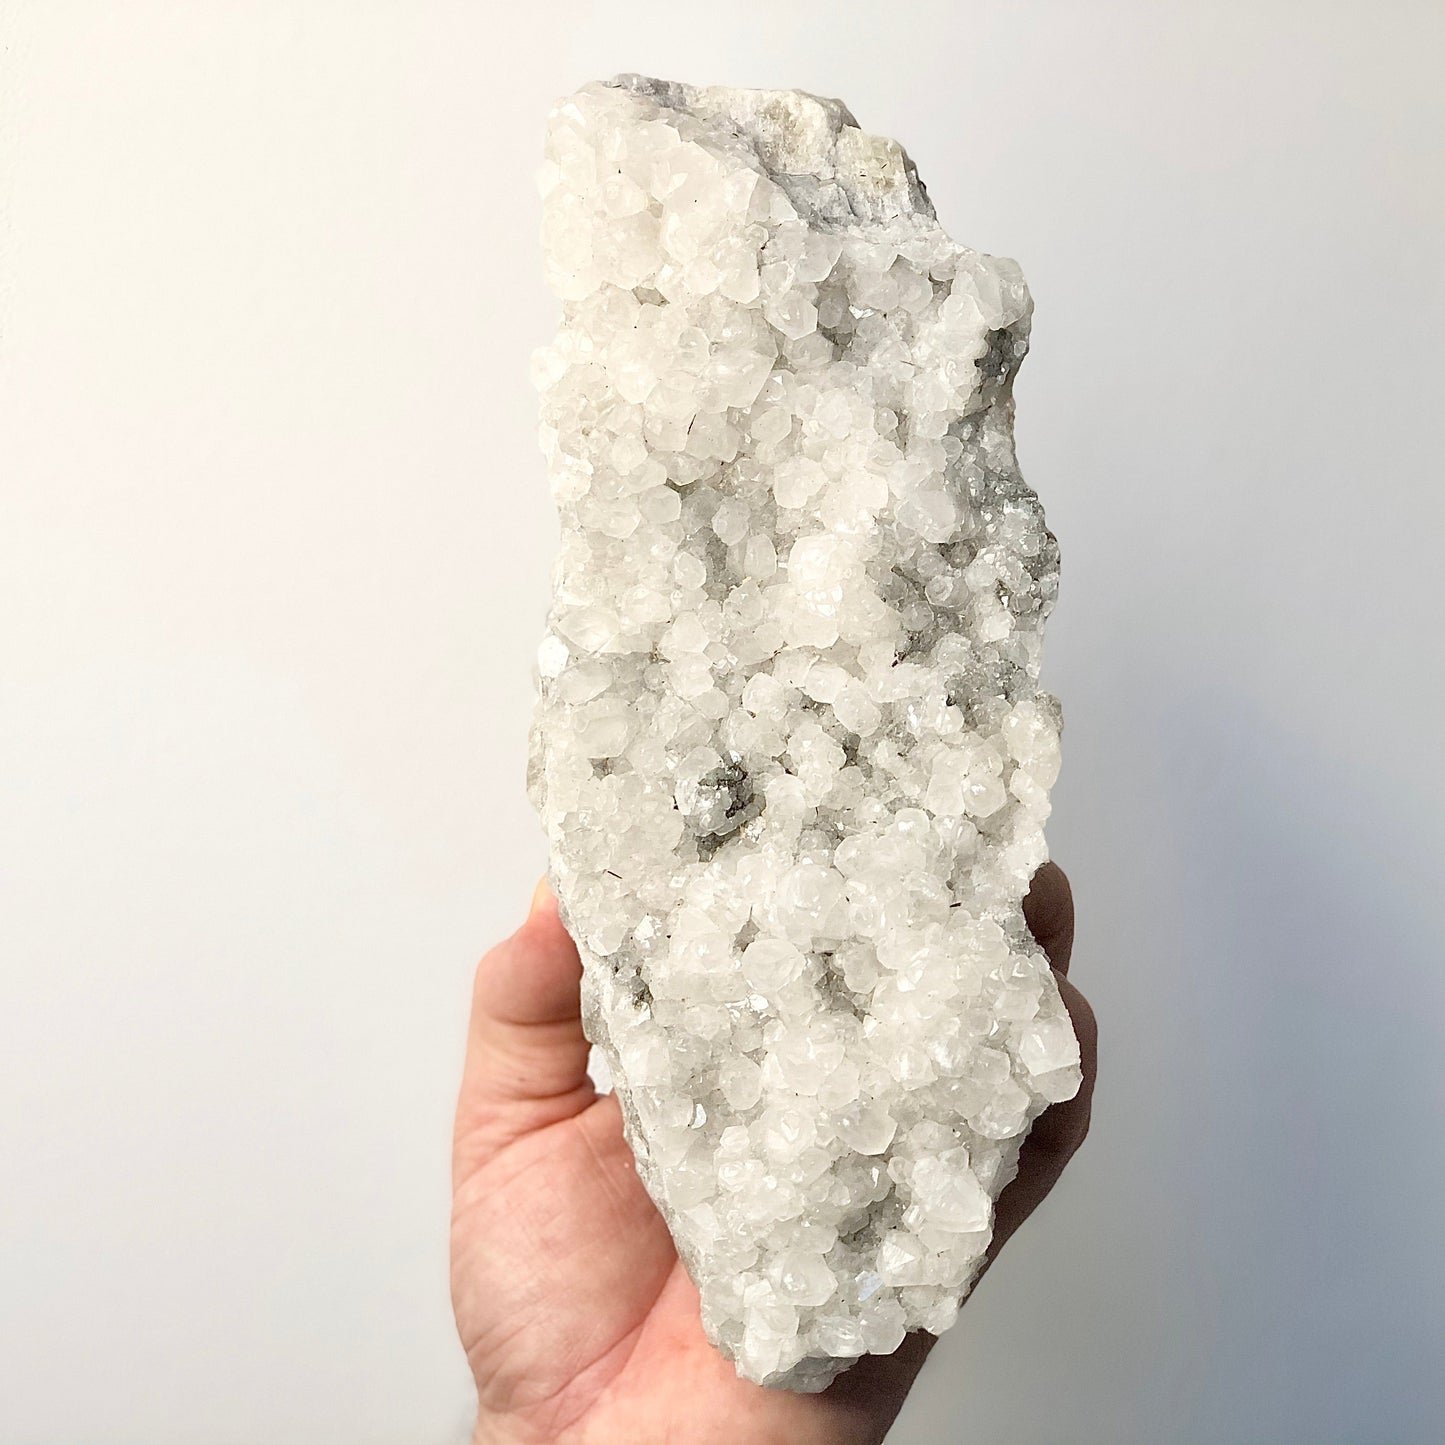 Apophyllite grade A crystal cluster XL 1.48kg